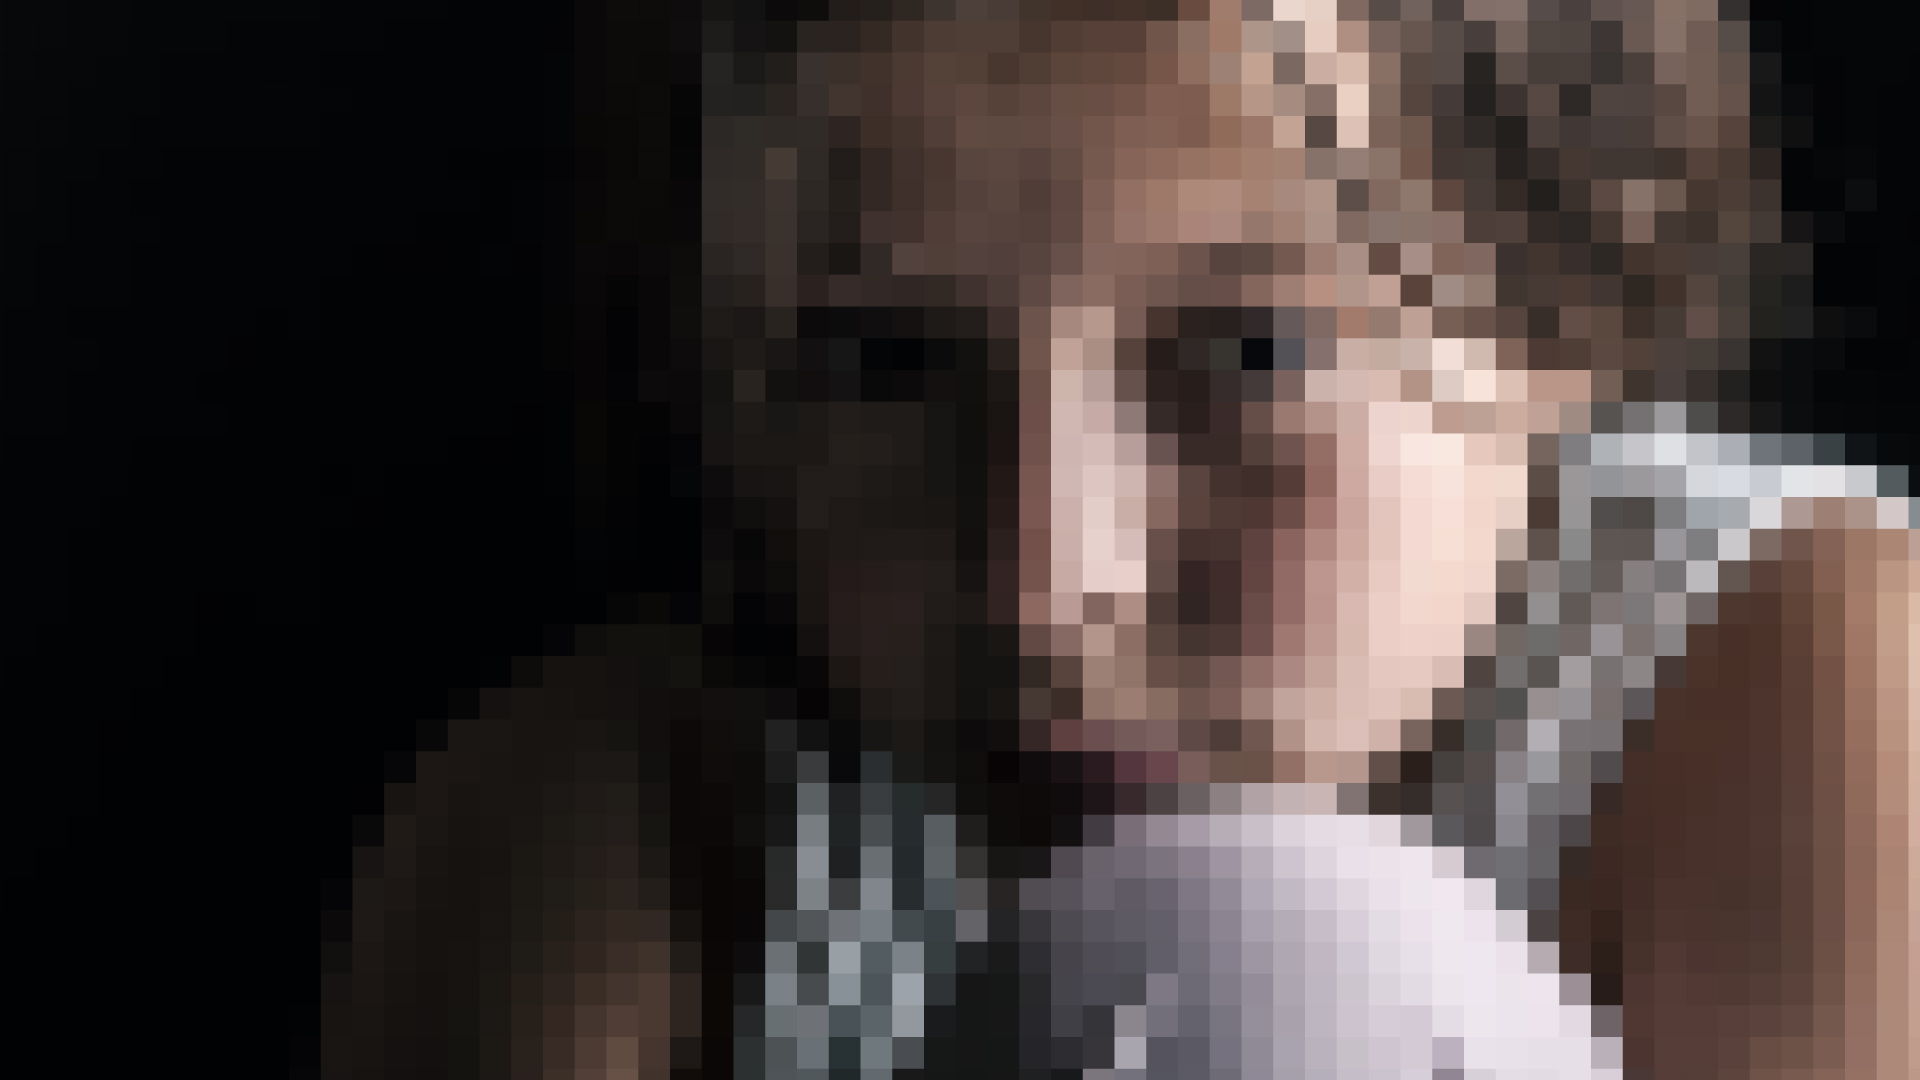 Pixelated Image of Young Girl